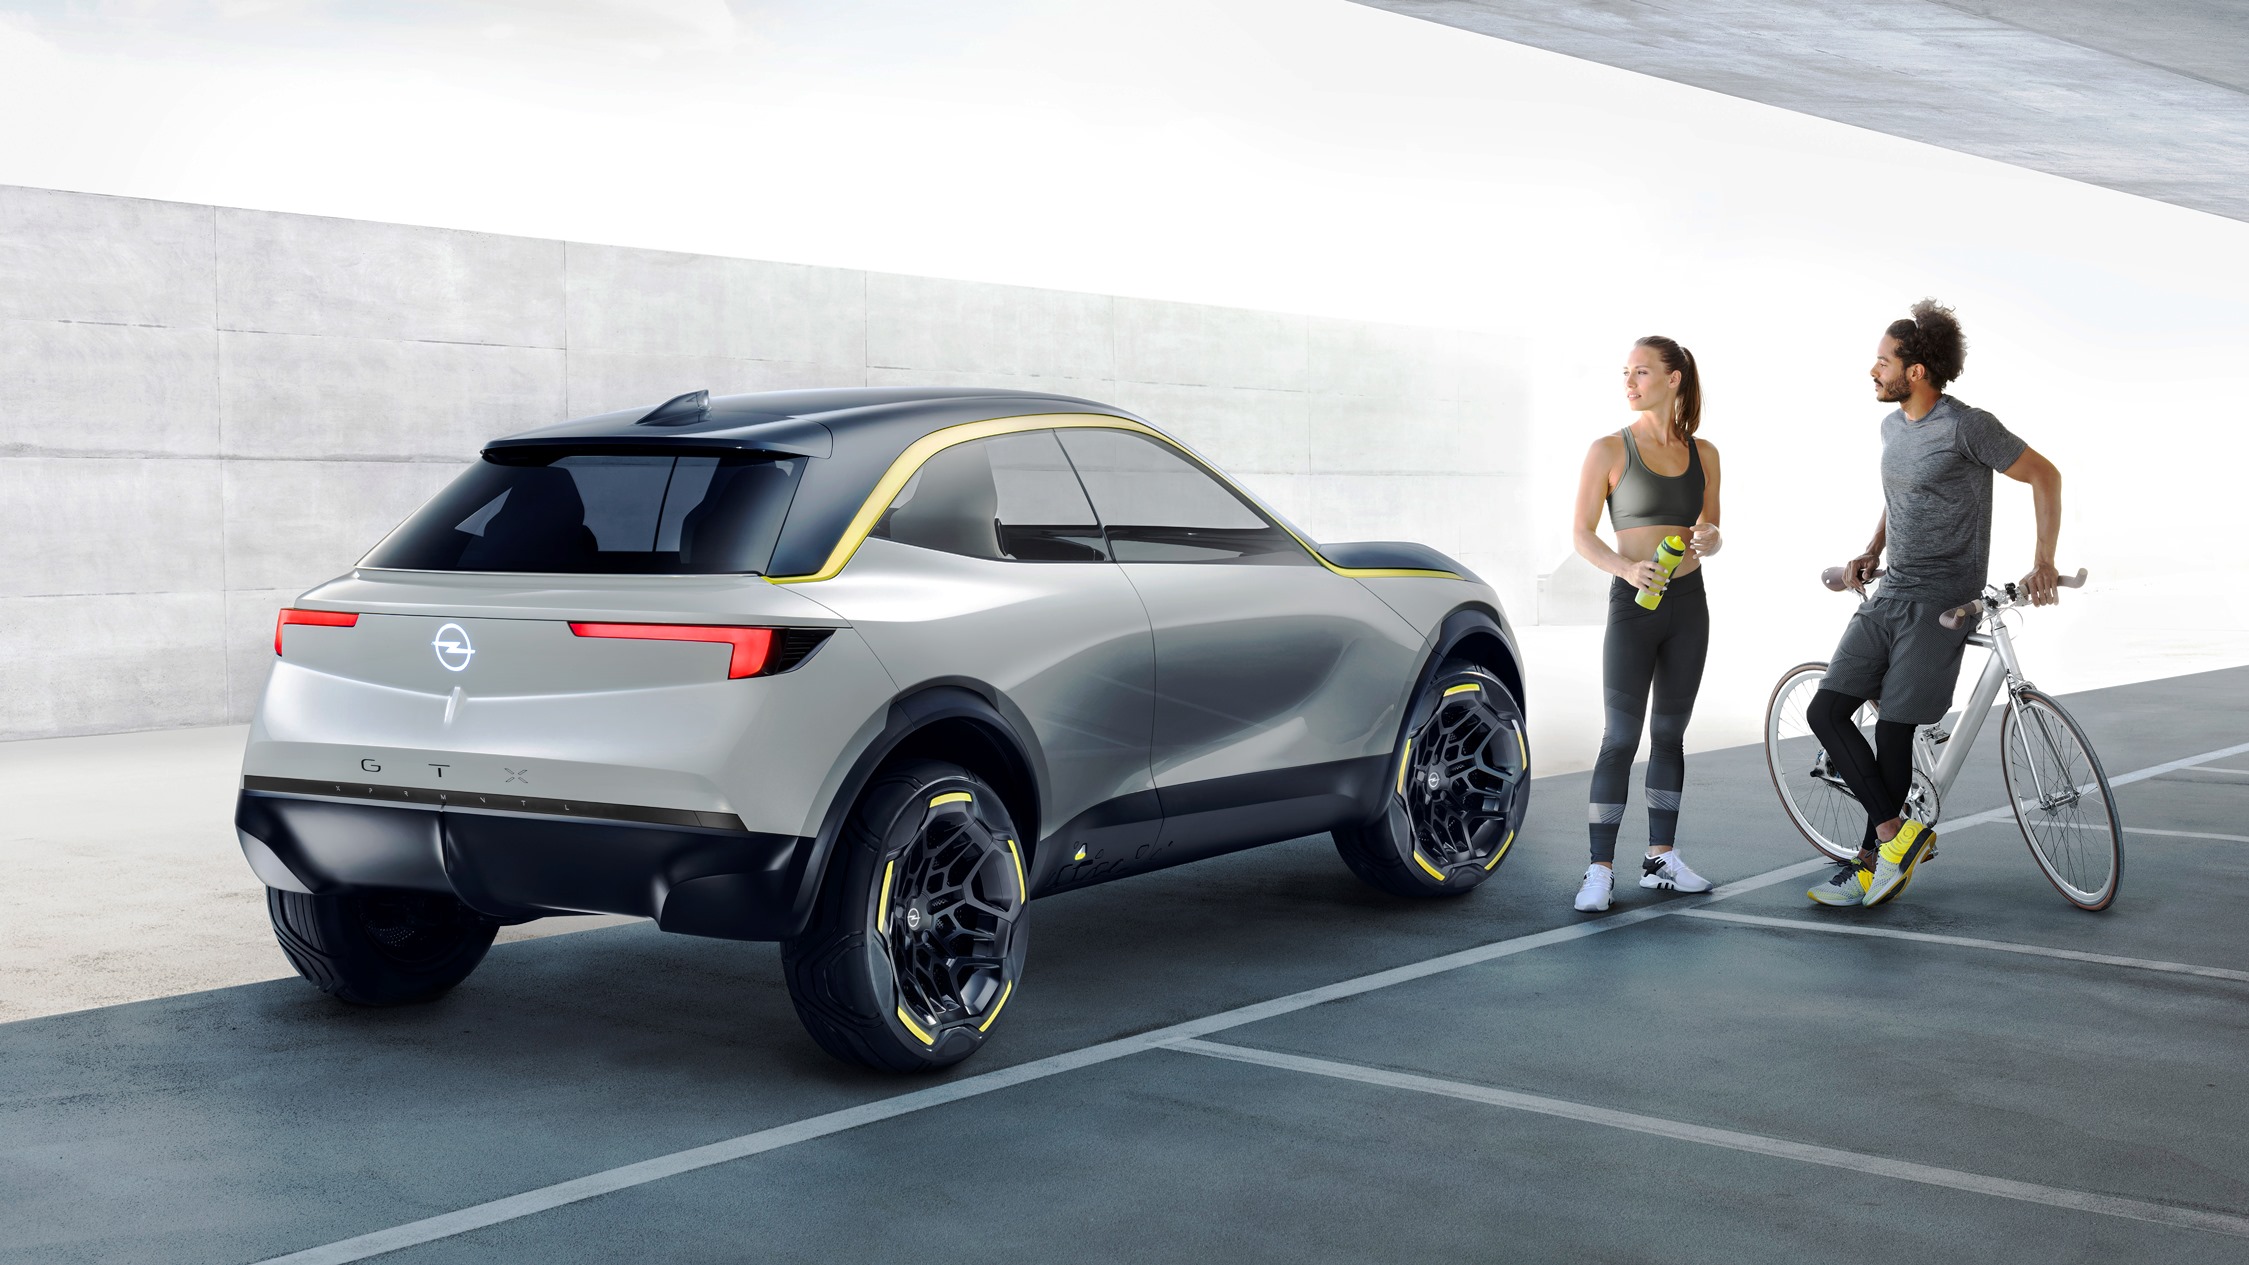 El primer Opel Corsa eléctrico llegará a finales de 2019